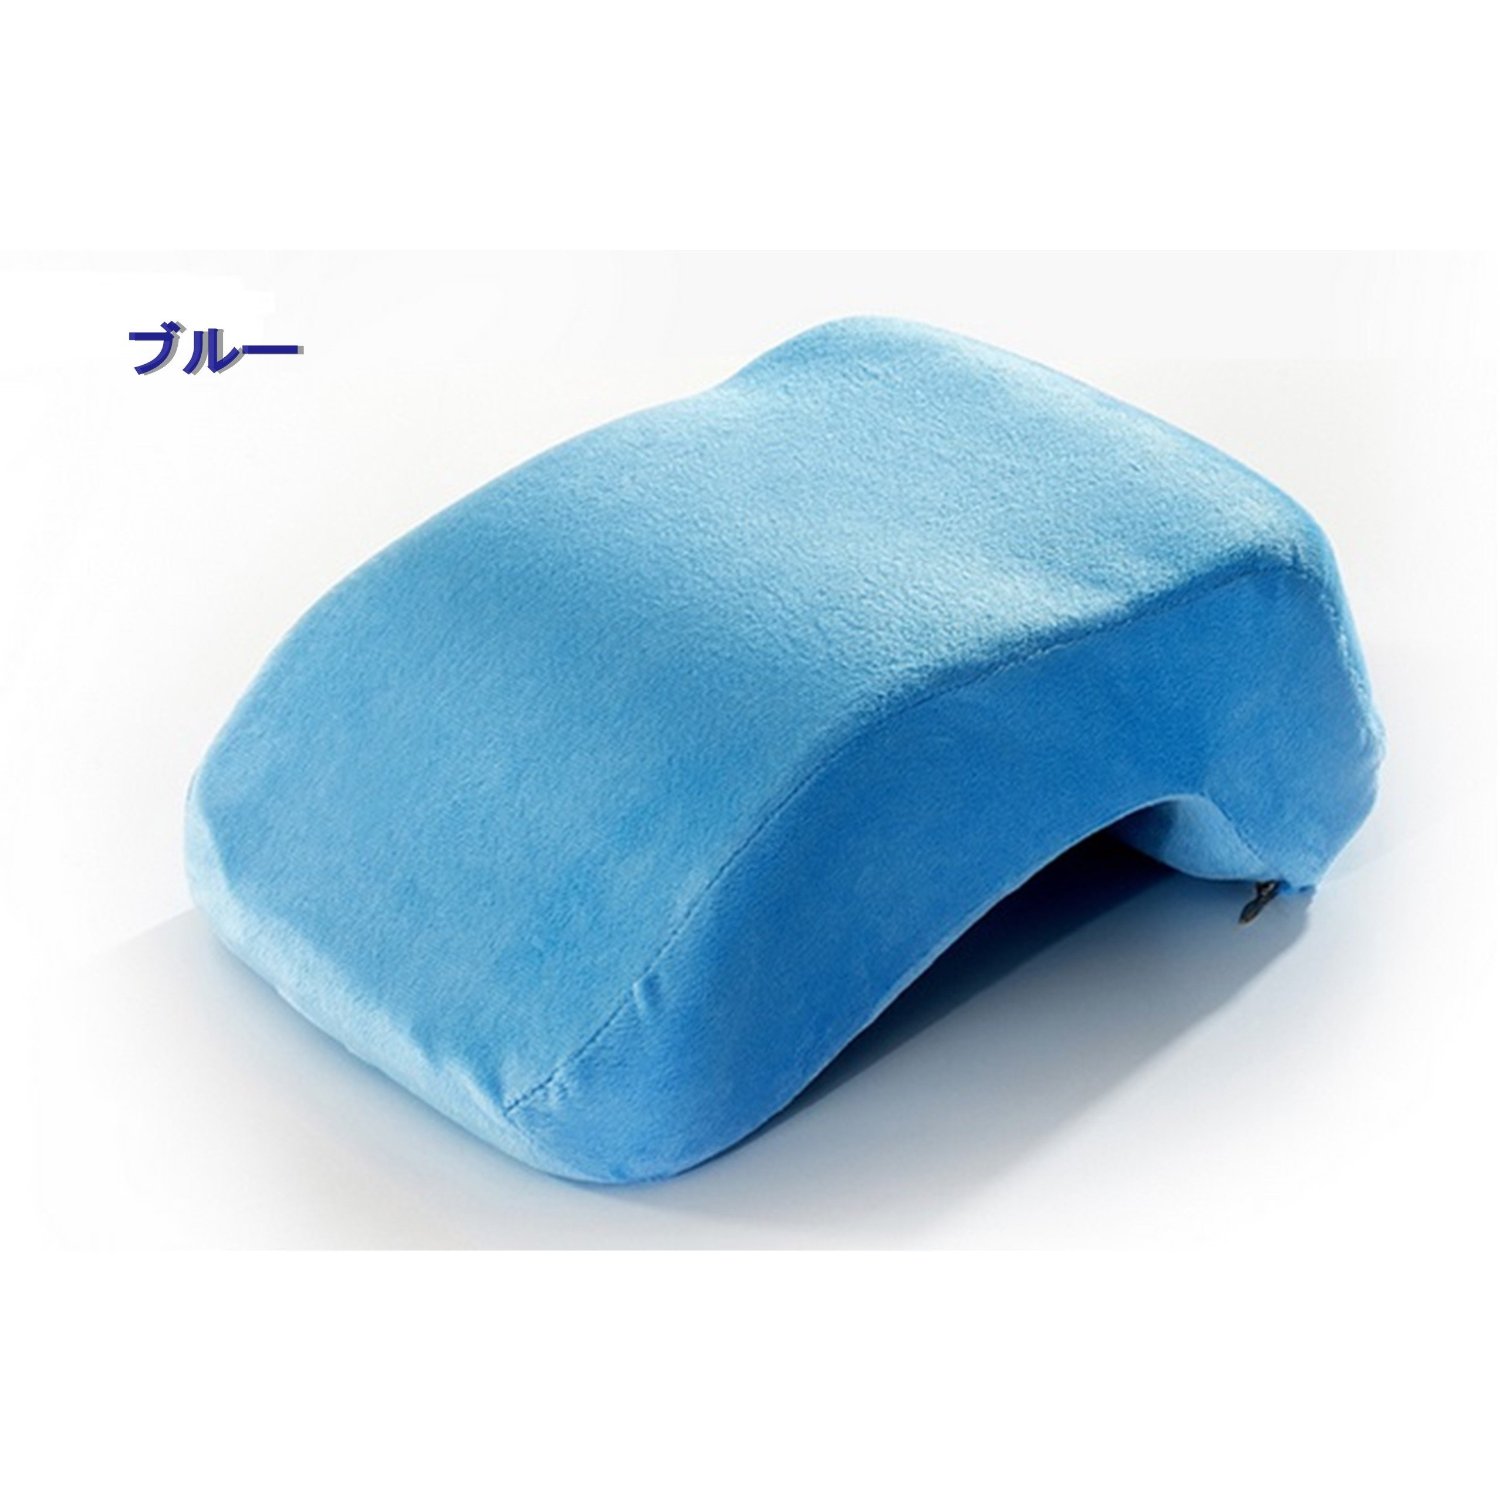 至福のお昼寝タイム♪ちょい寝に最適な低反発お昼寝枕 デスク枕 携帯枕 仮眠枕 まくら マクラ デスクピロー (ブルー)